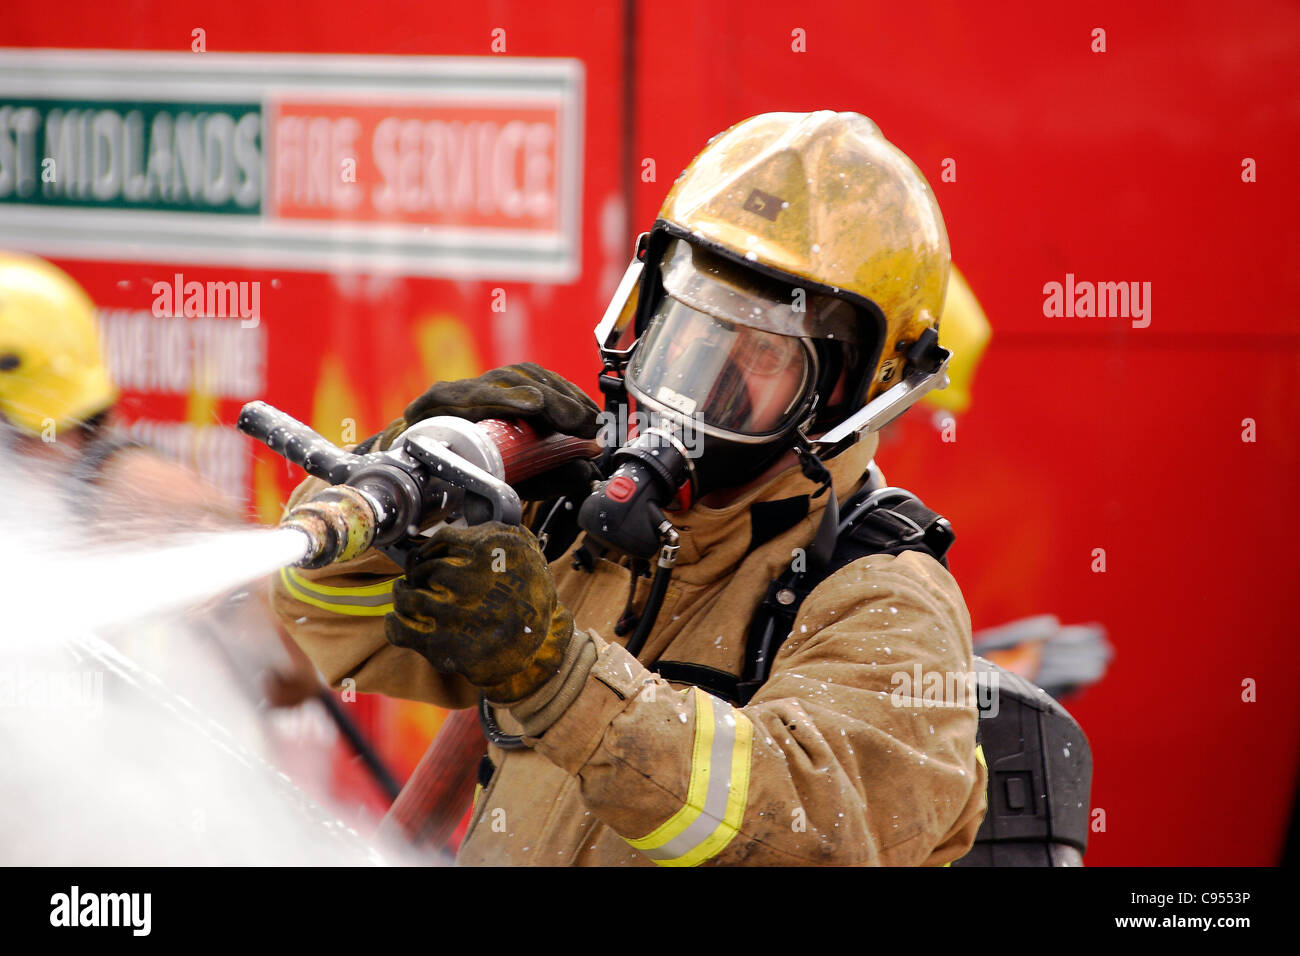 Feuerwehrmann mit CAFS, ein Auto Feuer zu löschen Stockfoto